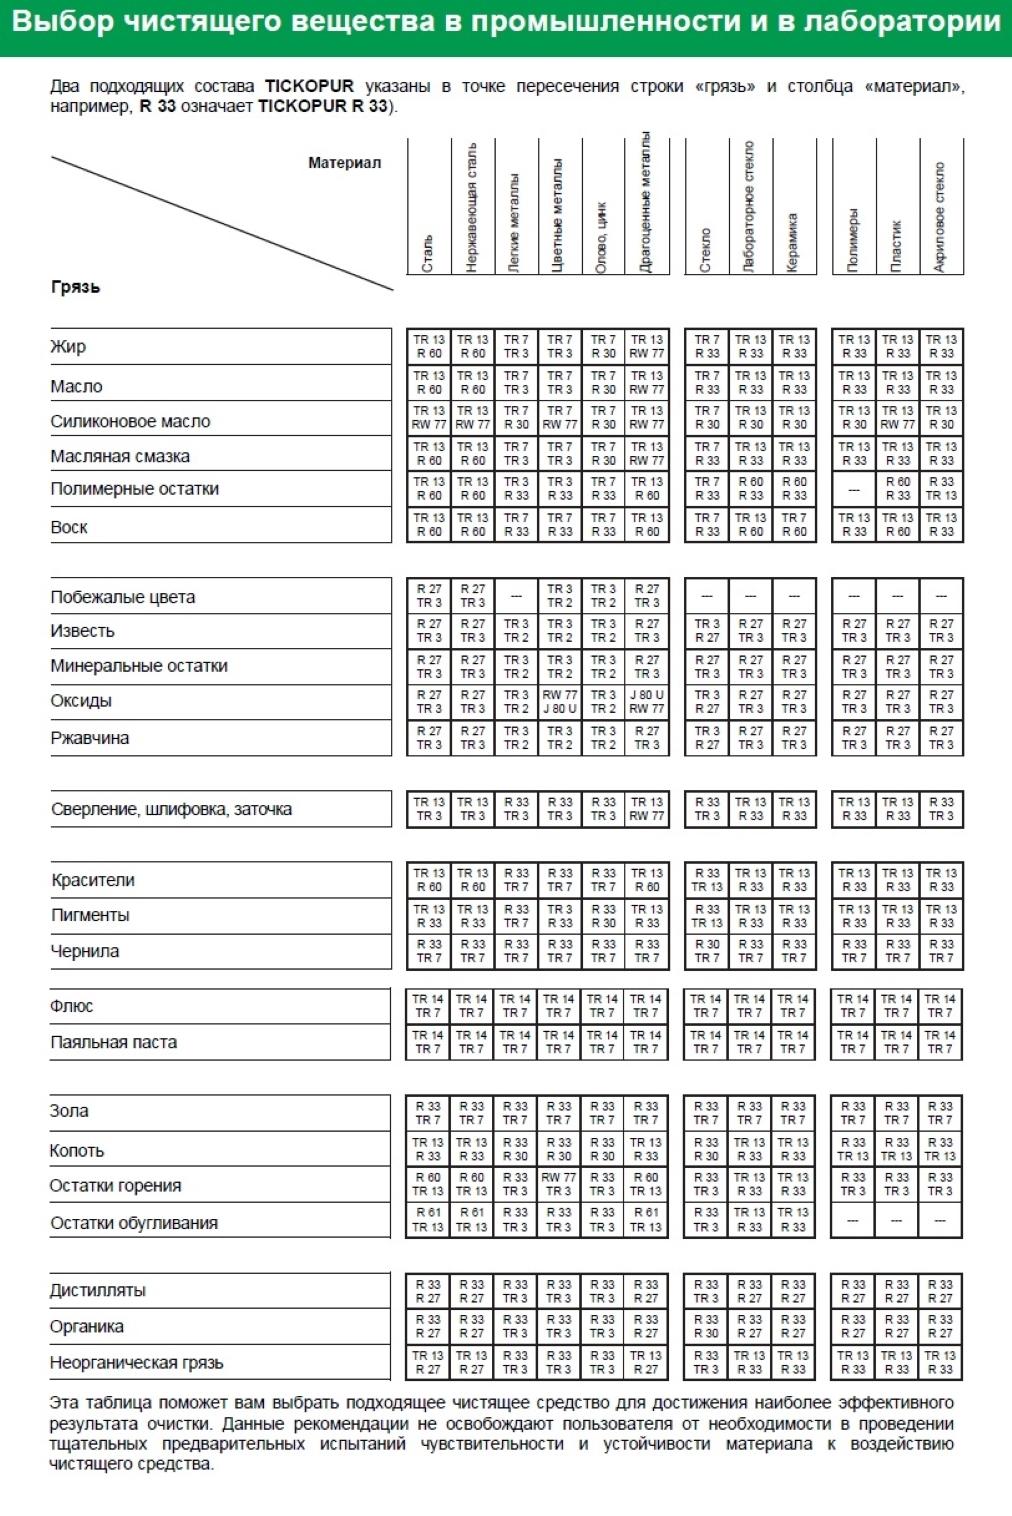 Таблица выбора чистящего вещества R 30 TICKOPUR